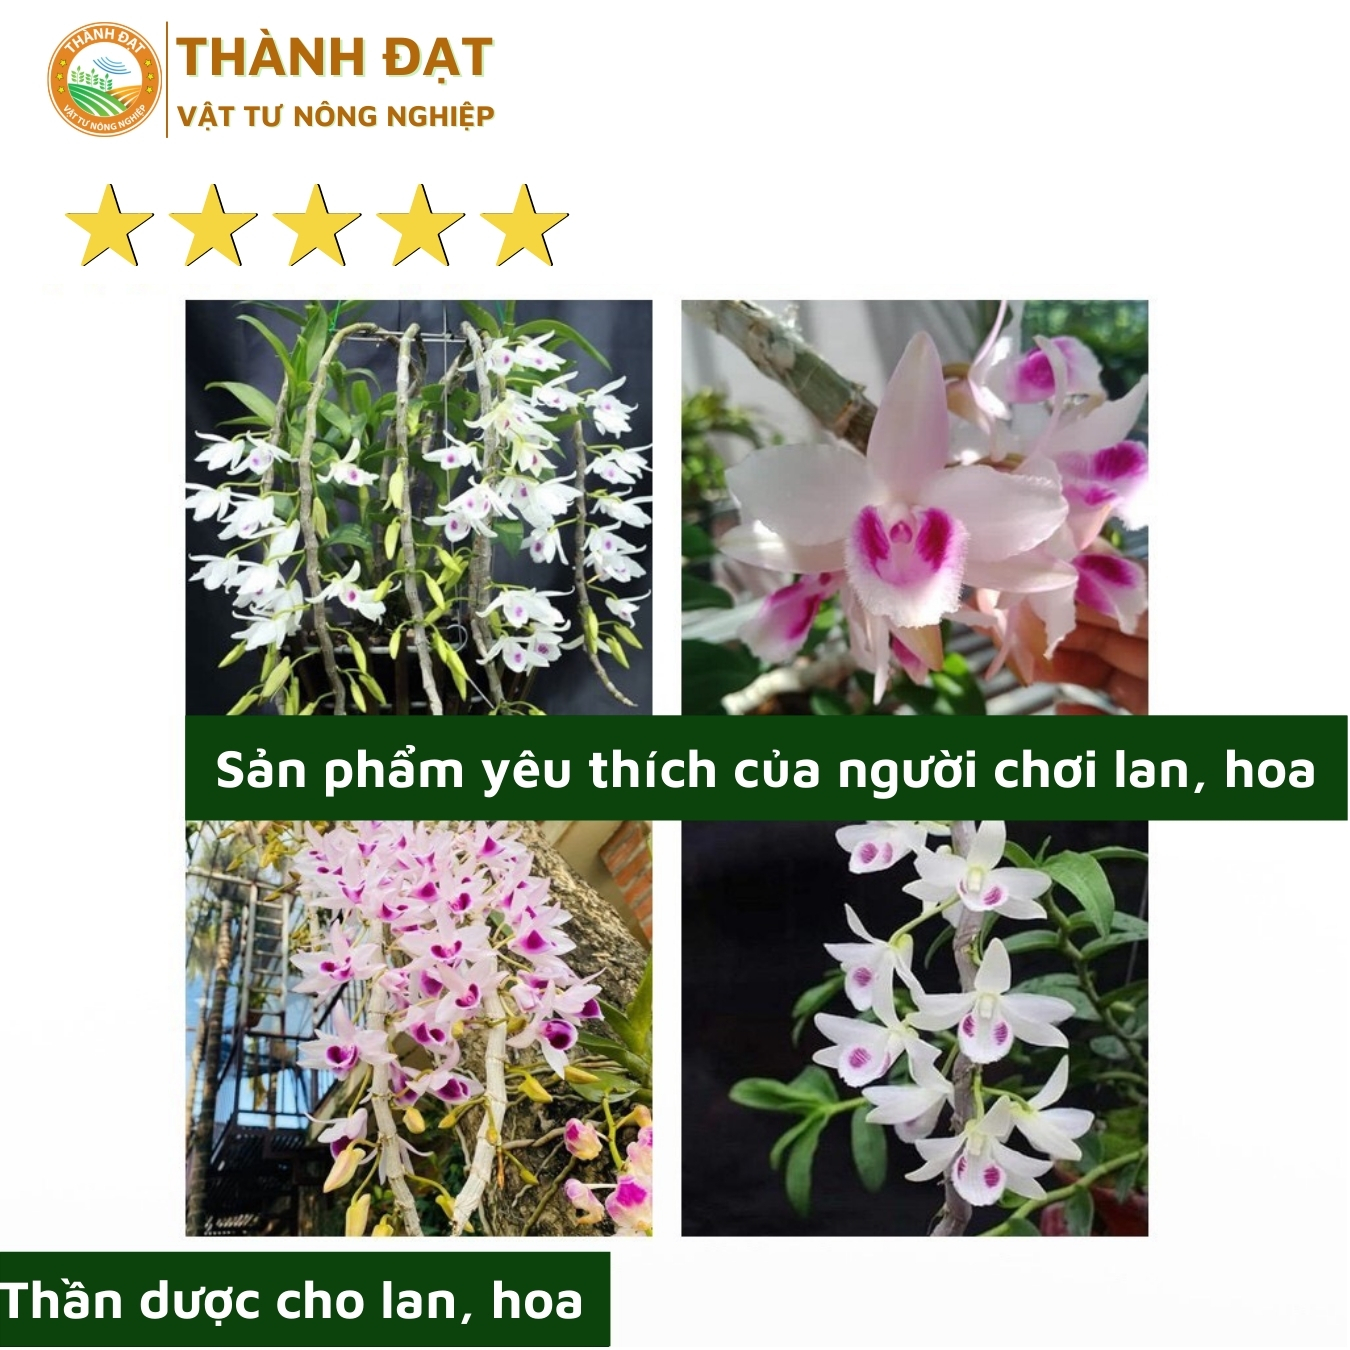 Viên Nén Dinh Dưỡng Hữu Cơ Hùng Nguyễn Ben 01 gói 1 ký, phân bón cho lan - hoa - cây cảnh